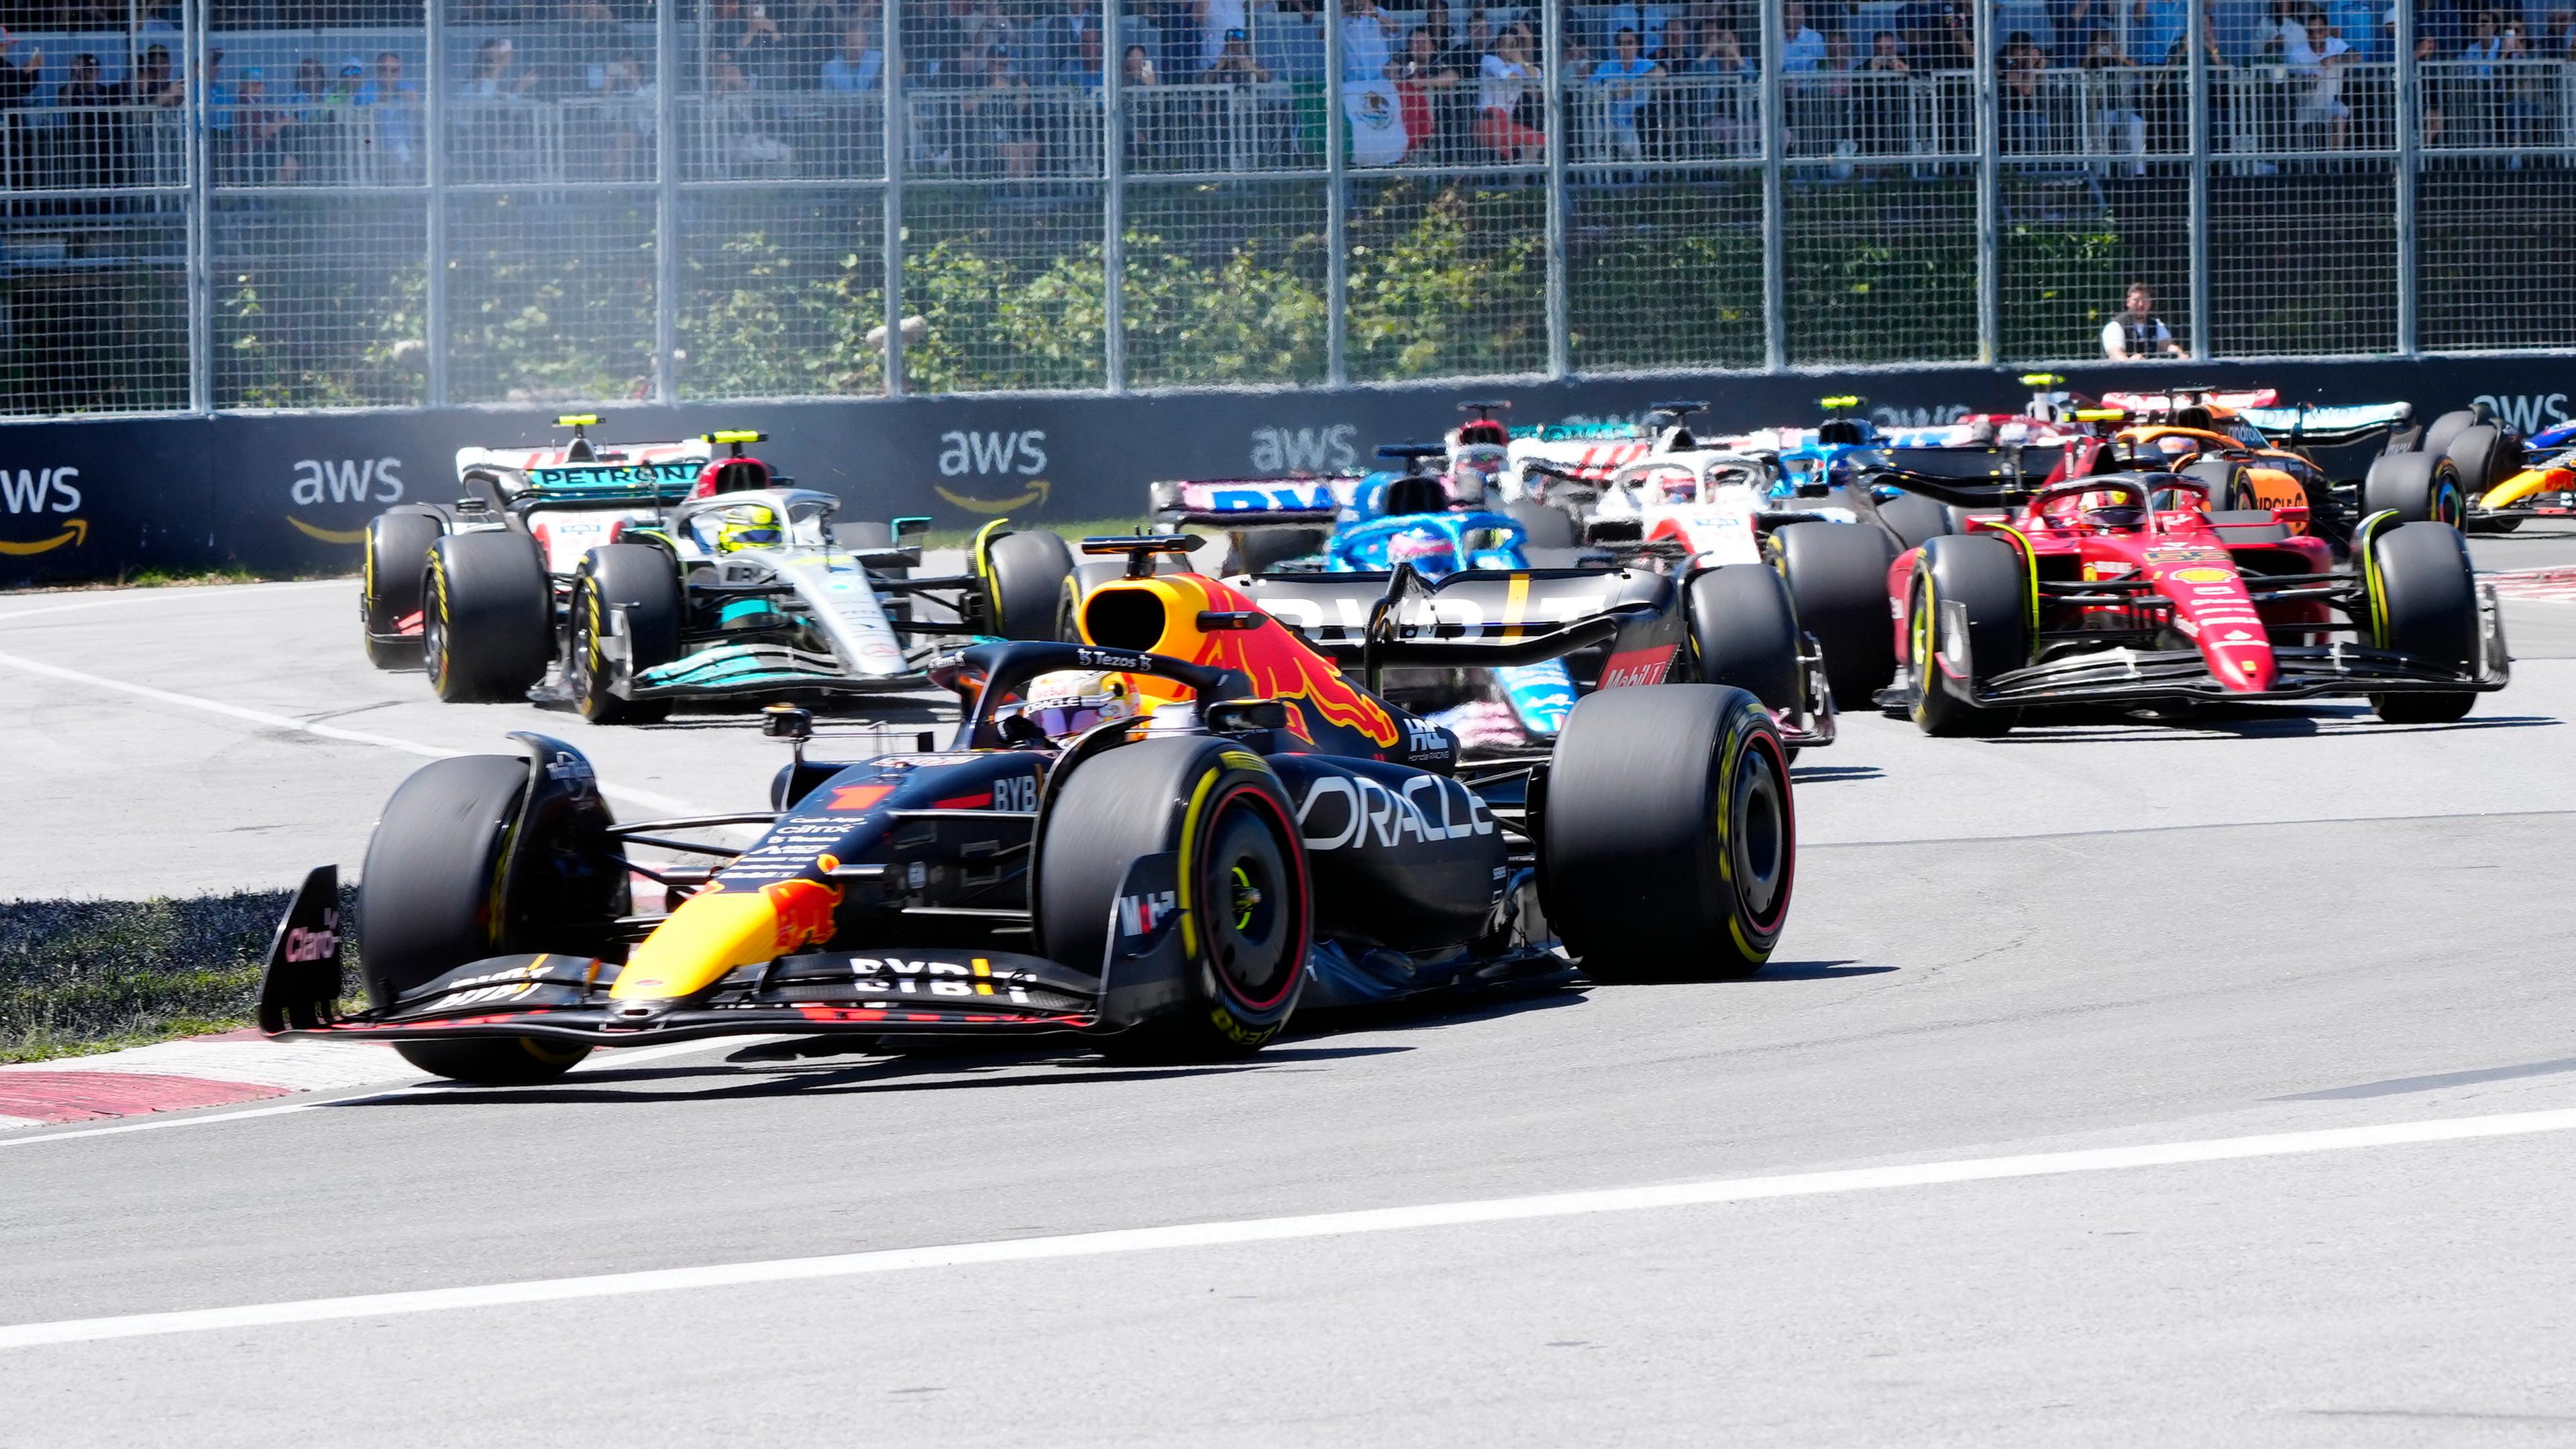 Formel-1-Weltmeisterschaft, Grand Prix von Kanada: Max Verstappen (vorne) aus den Niederlanden vom Team Red Bull führt das Feld an